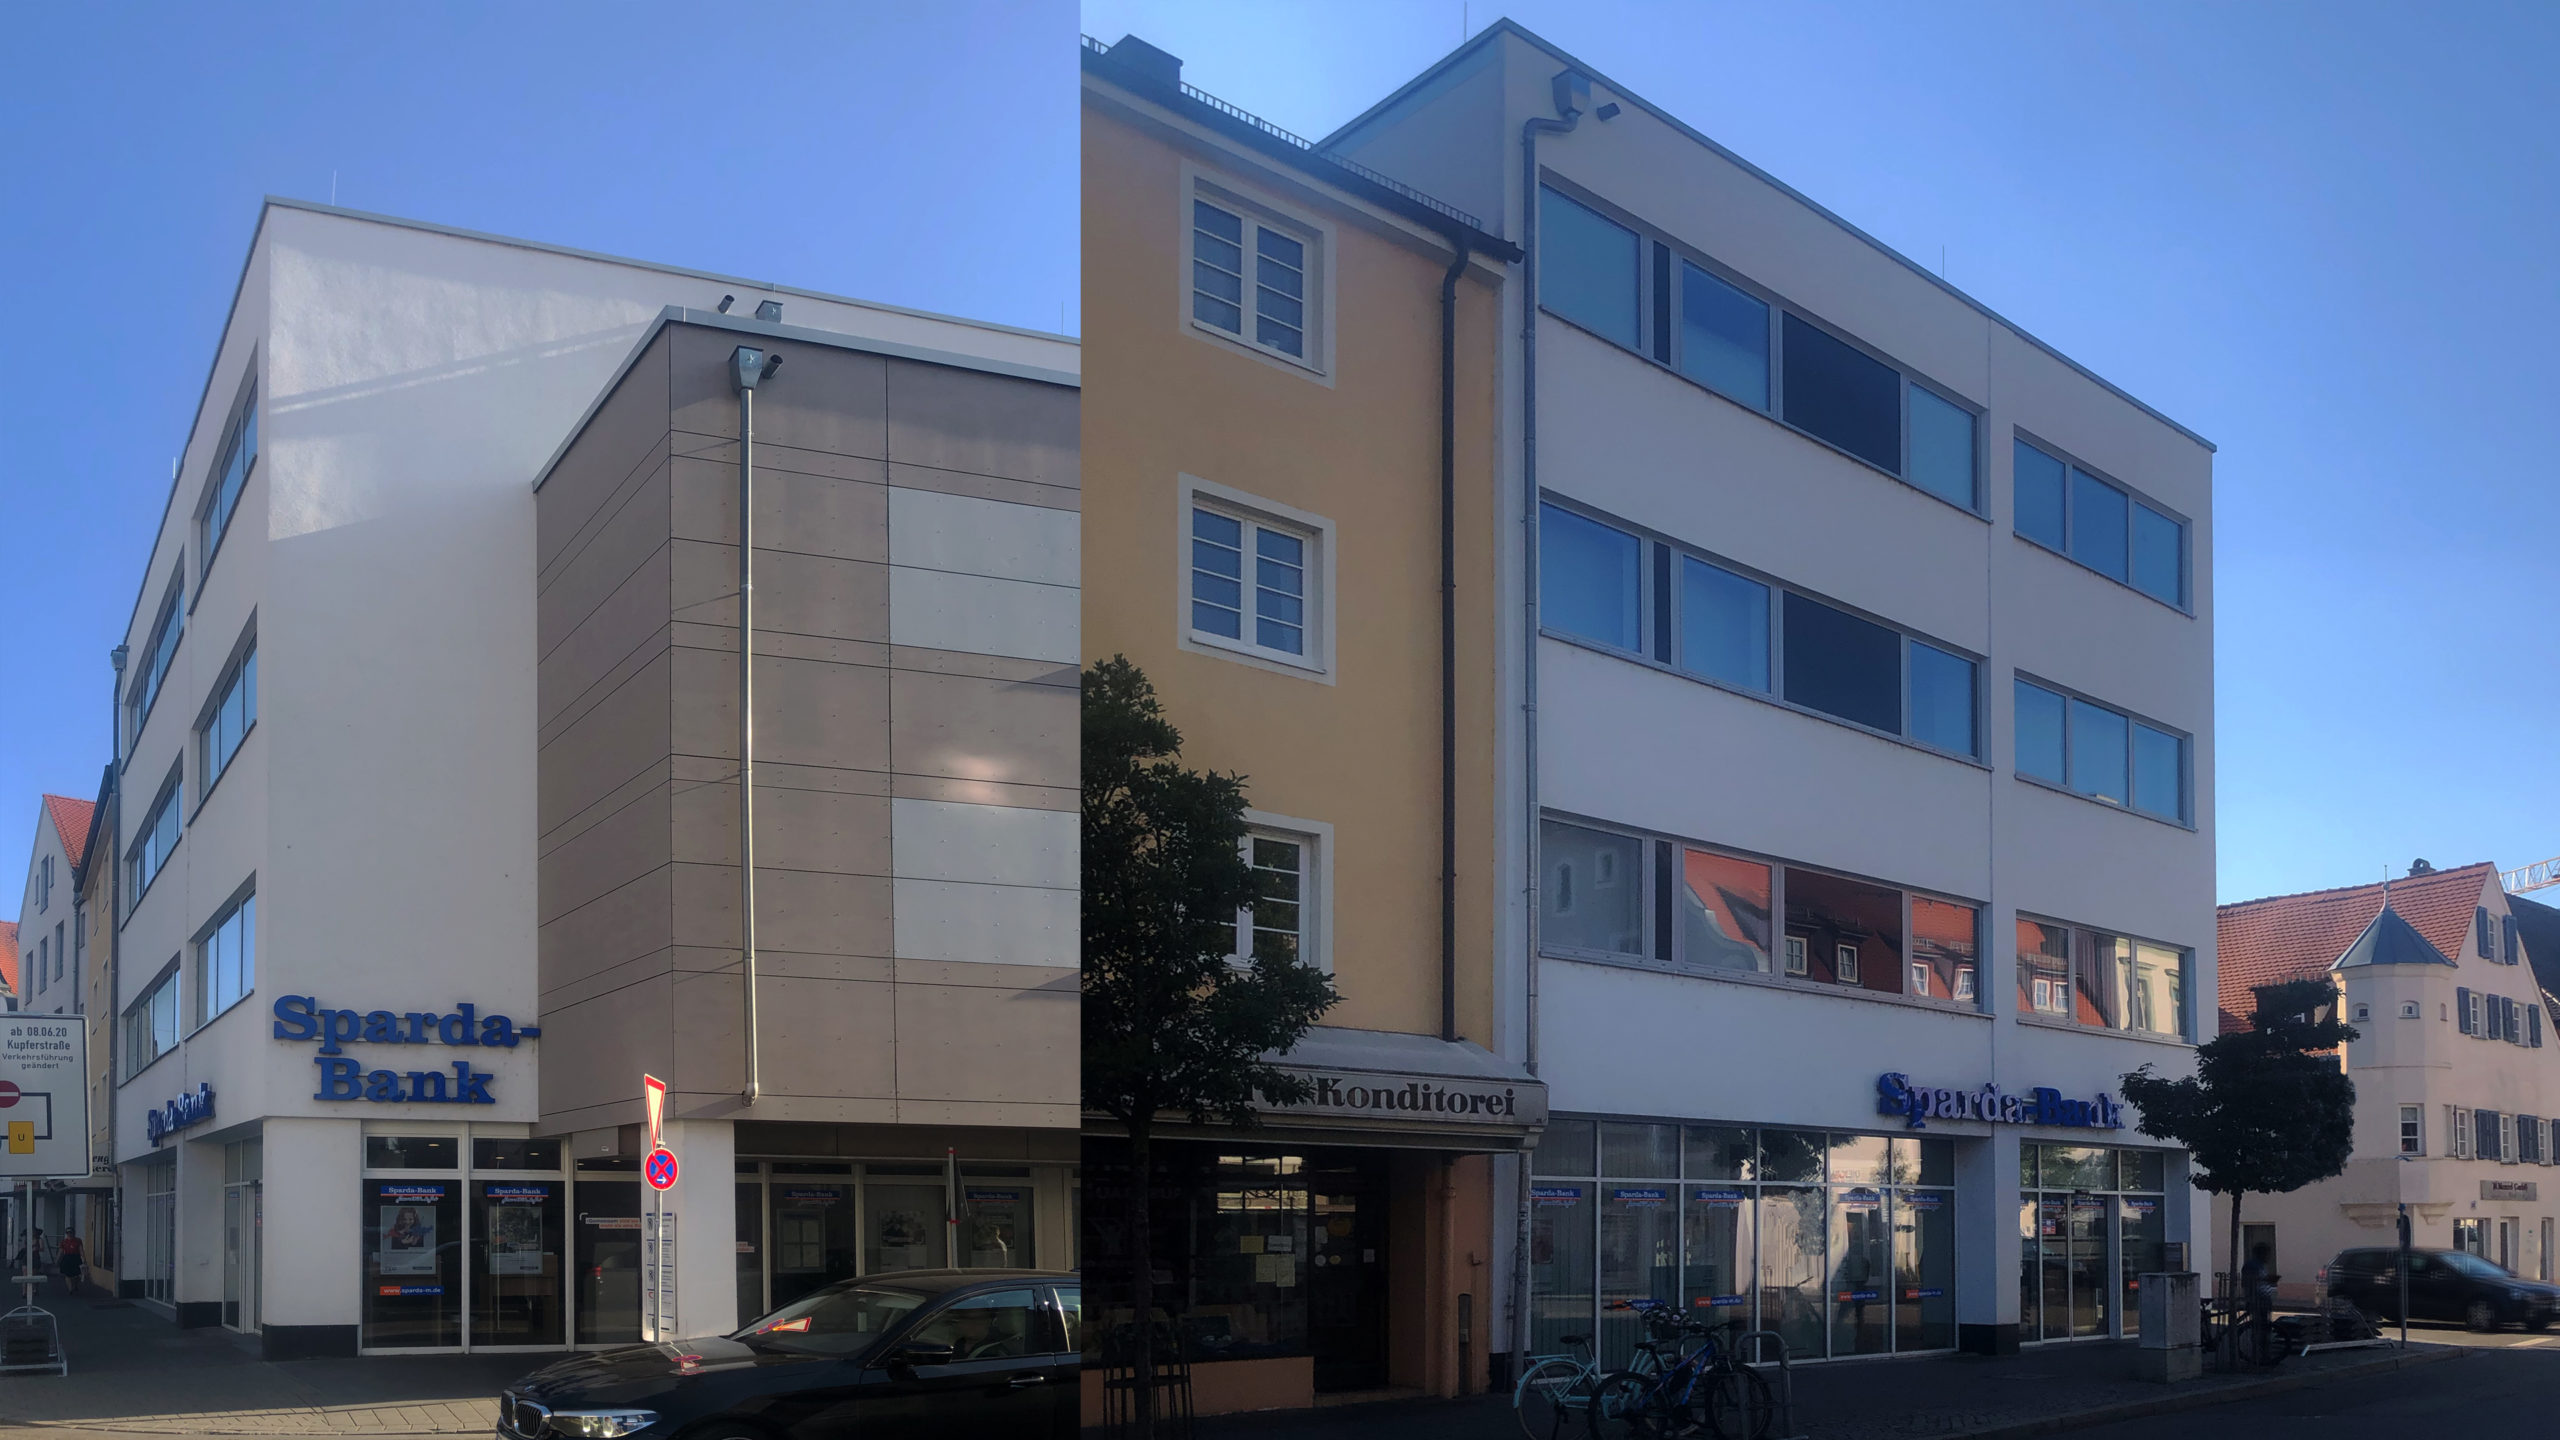 Büro & Verwaltungsbau - Ingolstadt